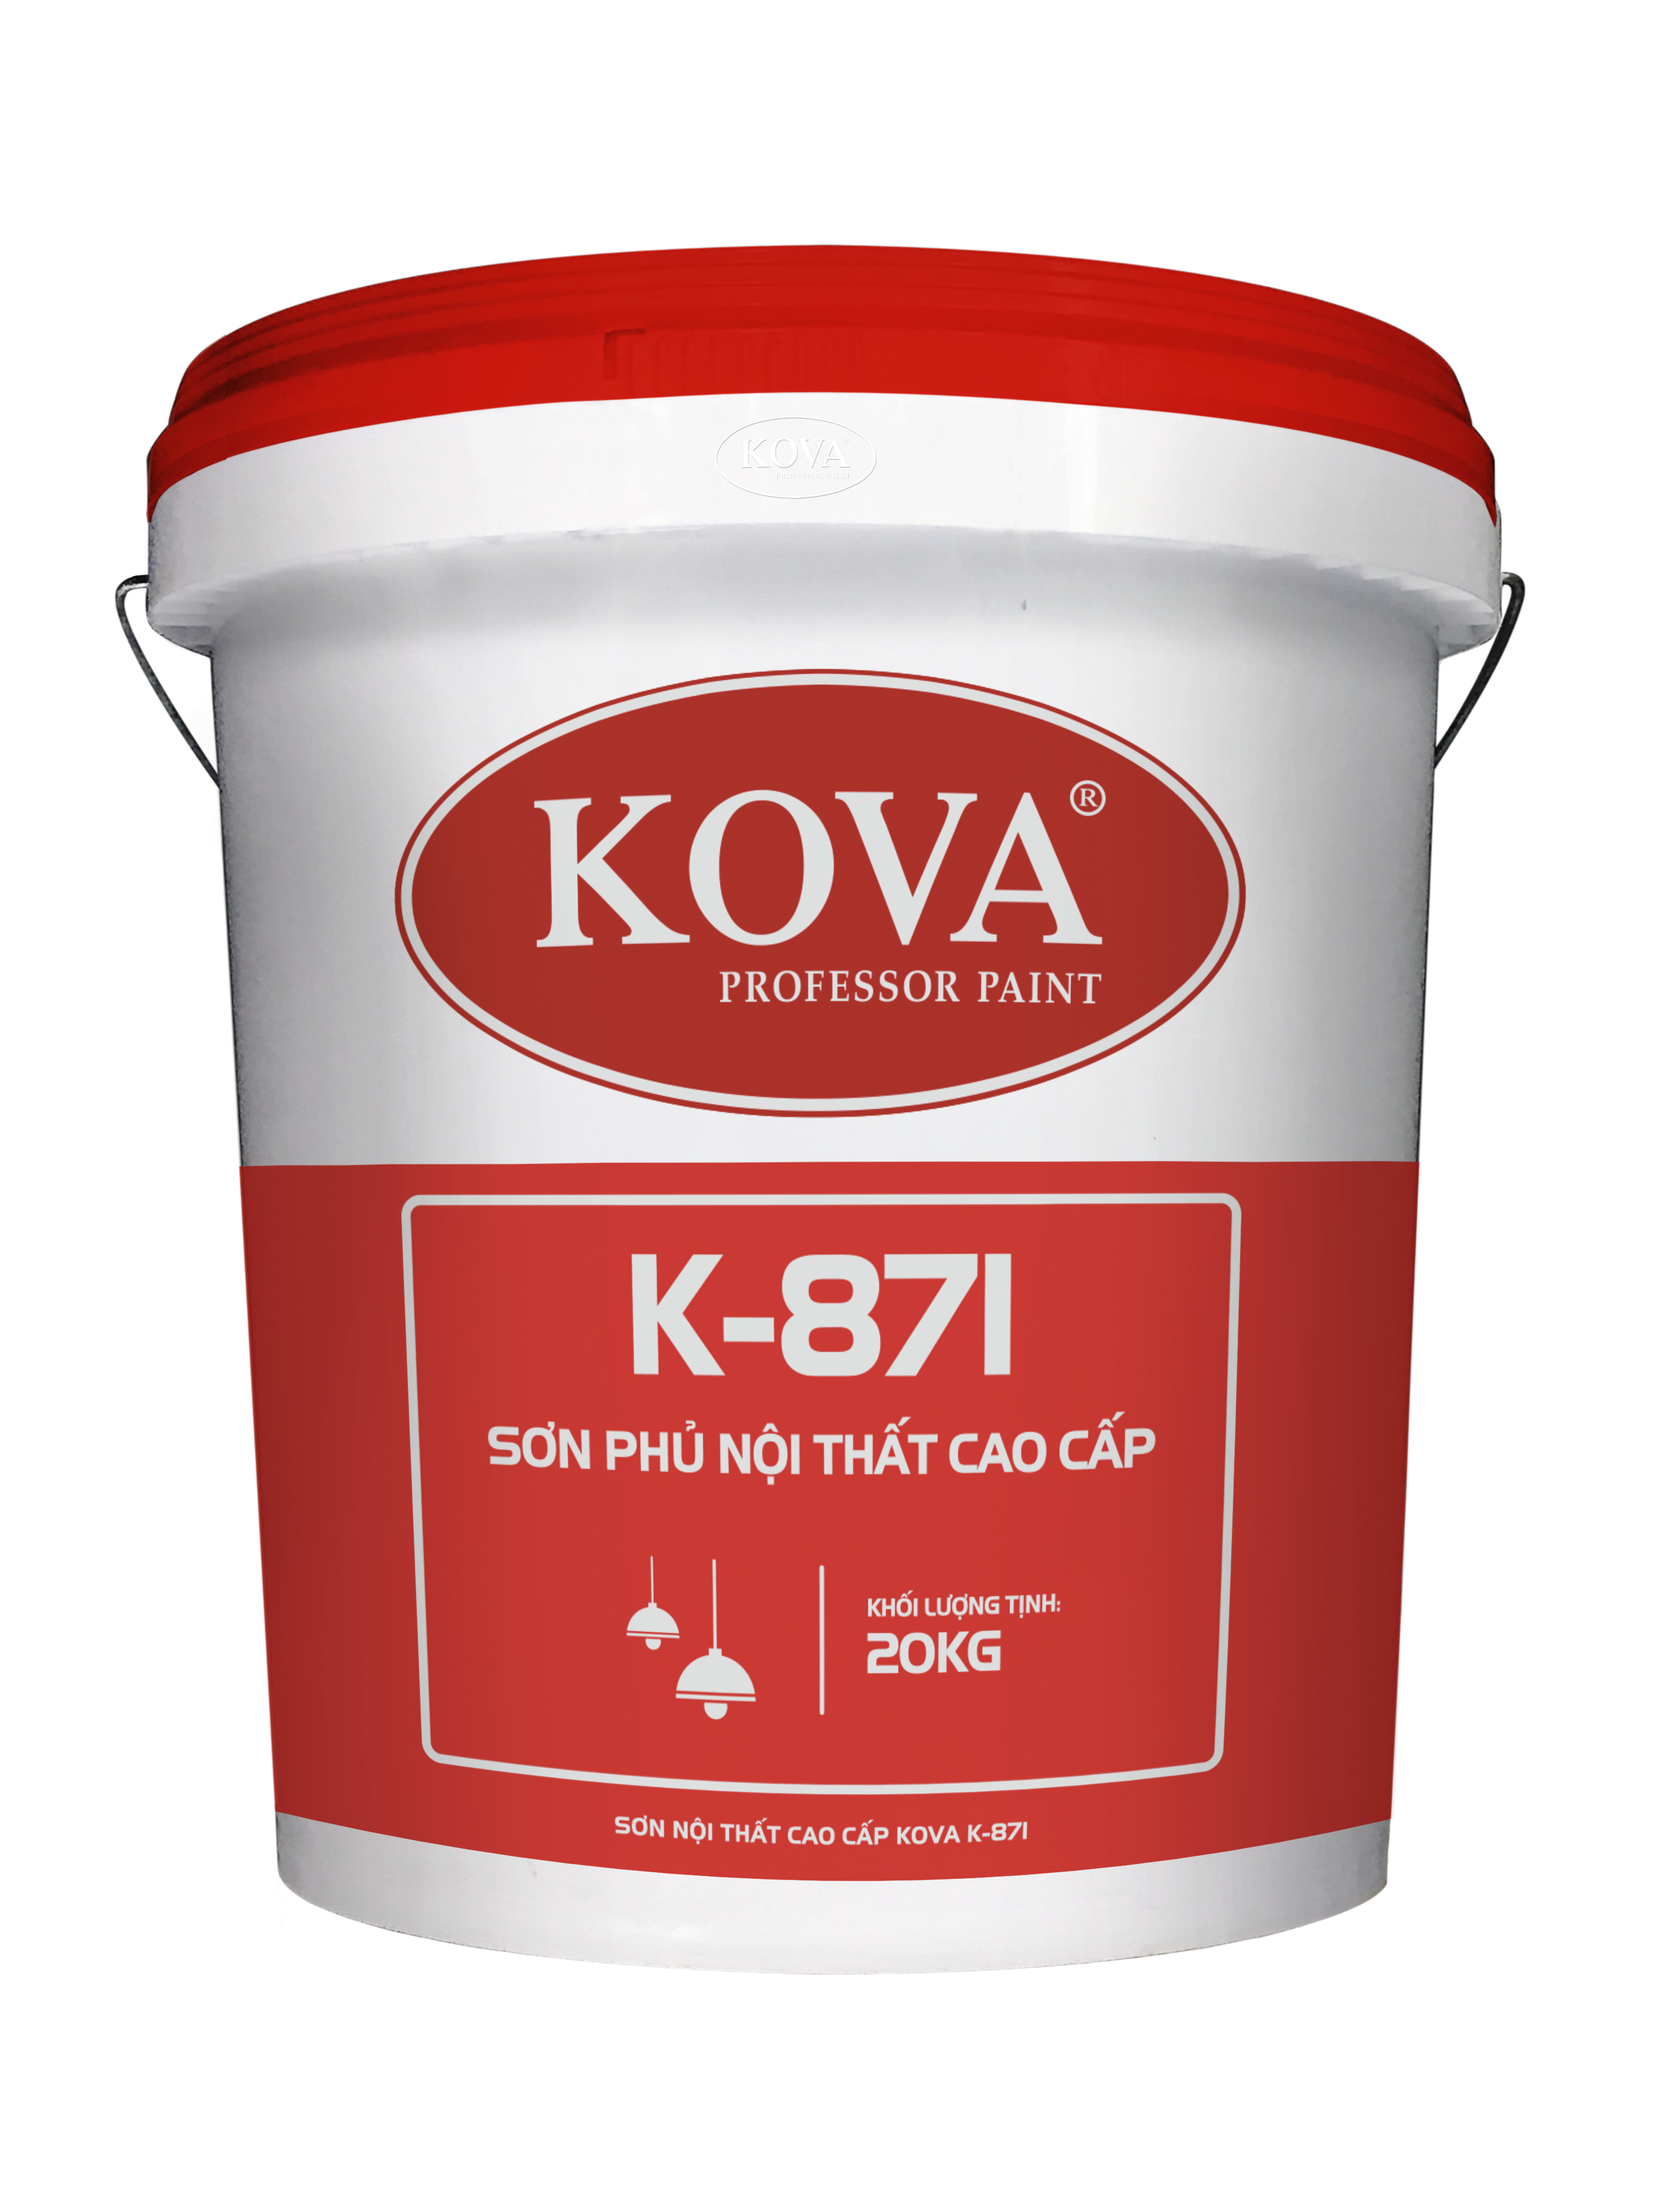 Bạn muốn trải nghiệm sự khác biệt với sơn nội thất cao cấp Kova K-871? Hãy xem hình ảnh để thấy màu sắc đa dạng, kết cấu mịn màng và độ bóng loáng đầy cuốn hút của sản phẩm.